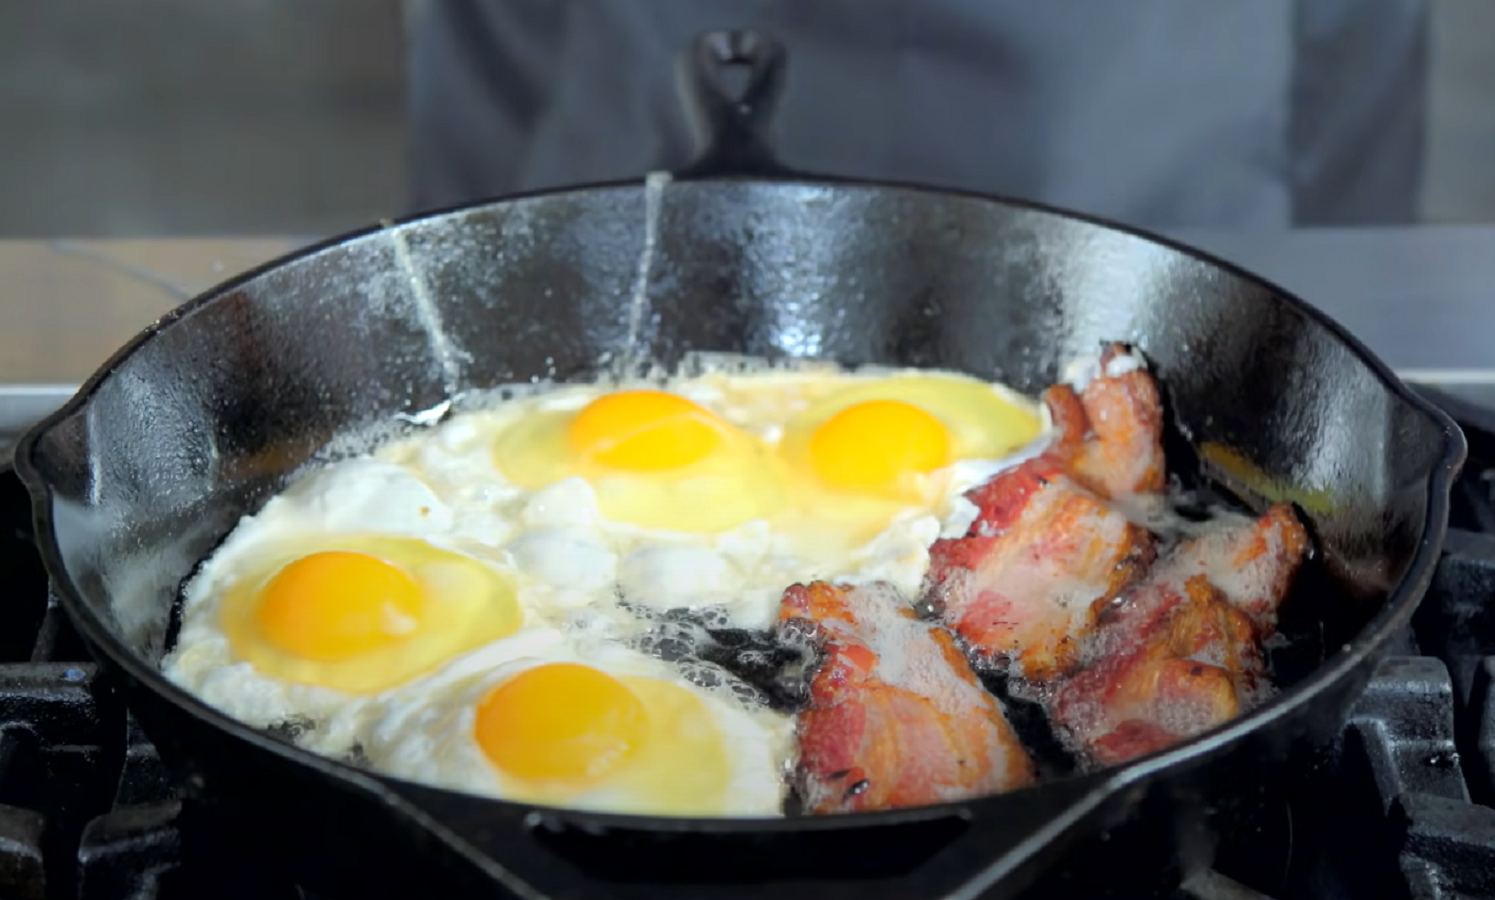  Nezdravost jaja i slanine 